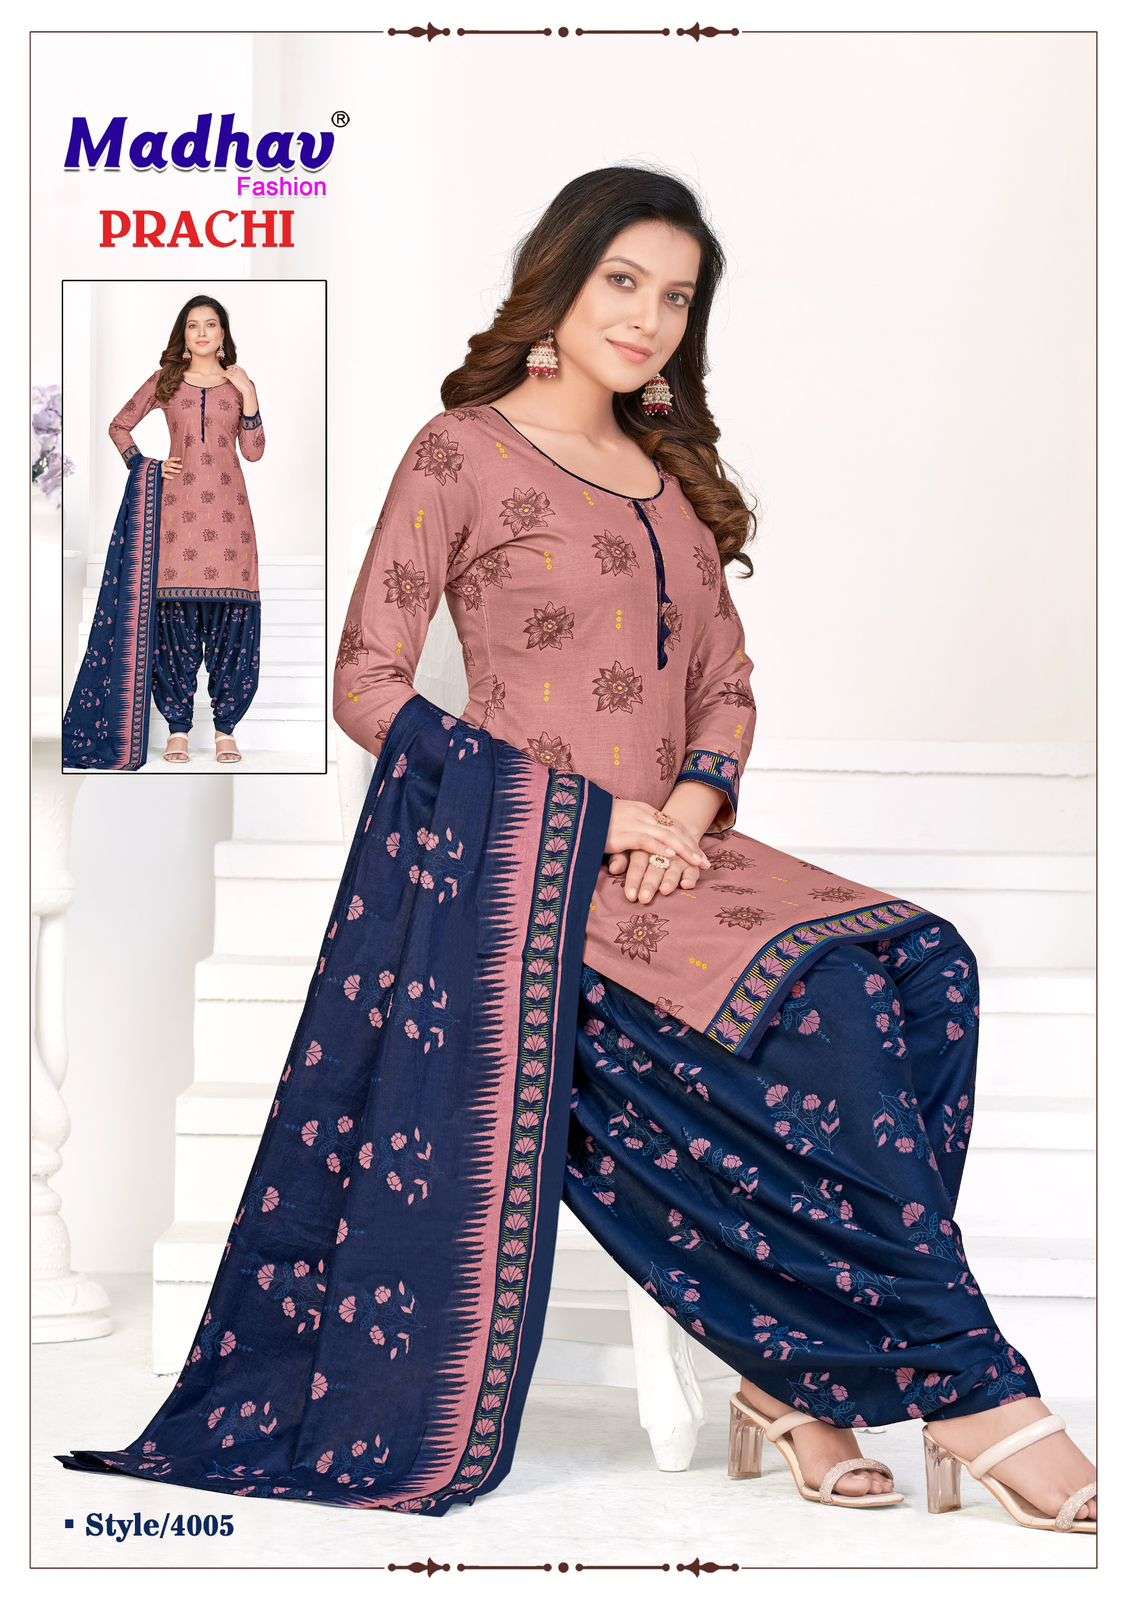 madhav fashion prachi vol-4 4001-4010 series latest fancy patiyala salwar kameez wholesaler surat gujarat